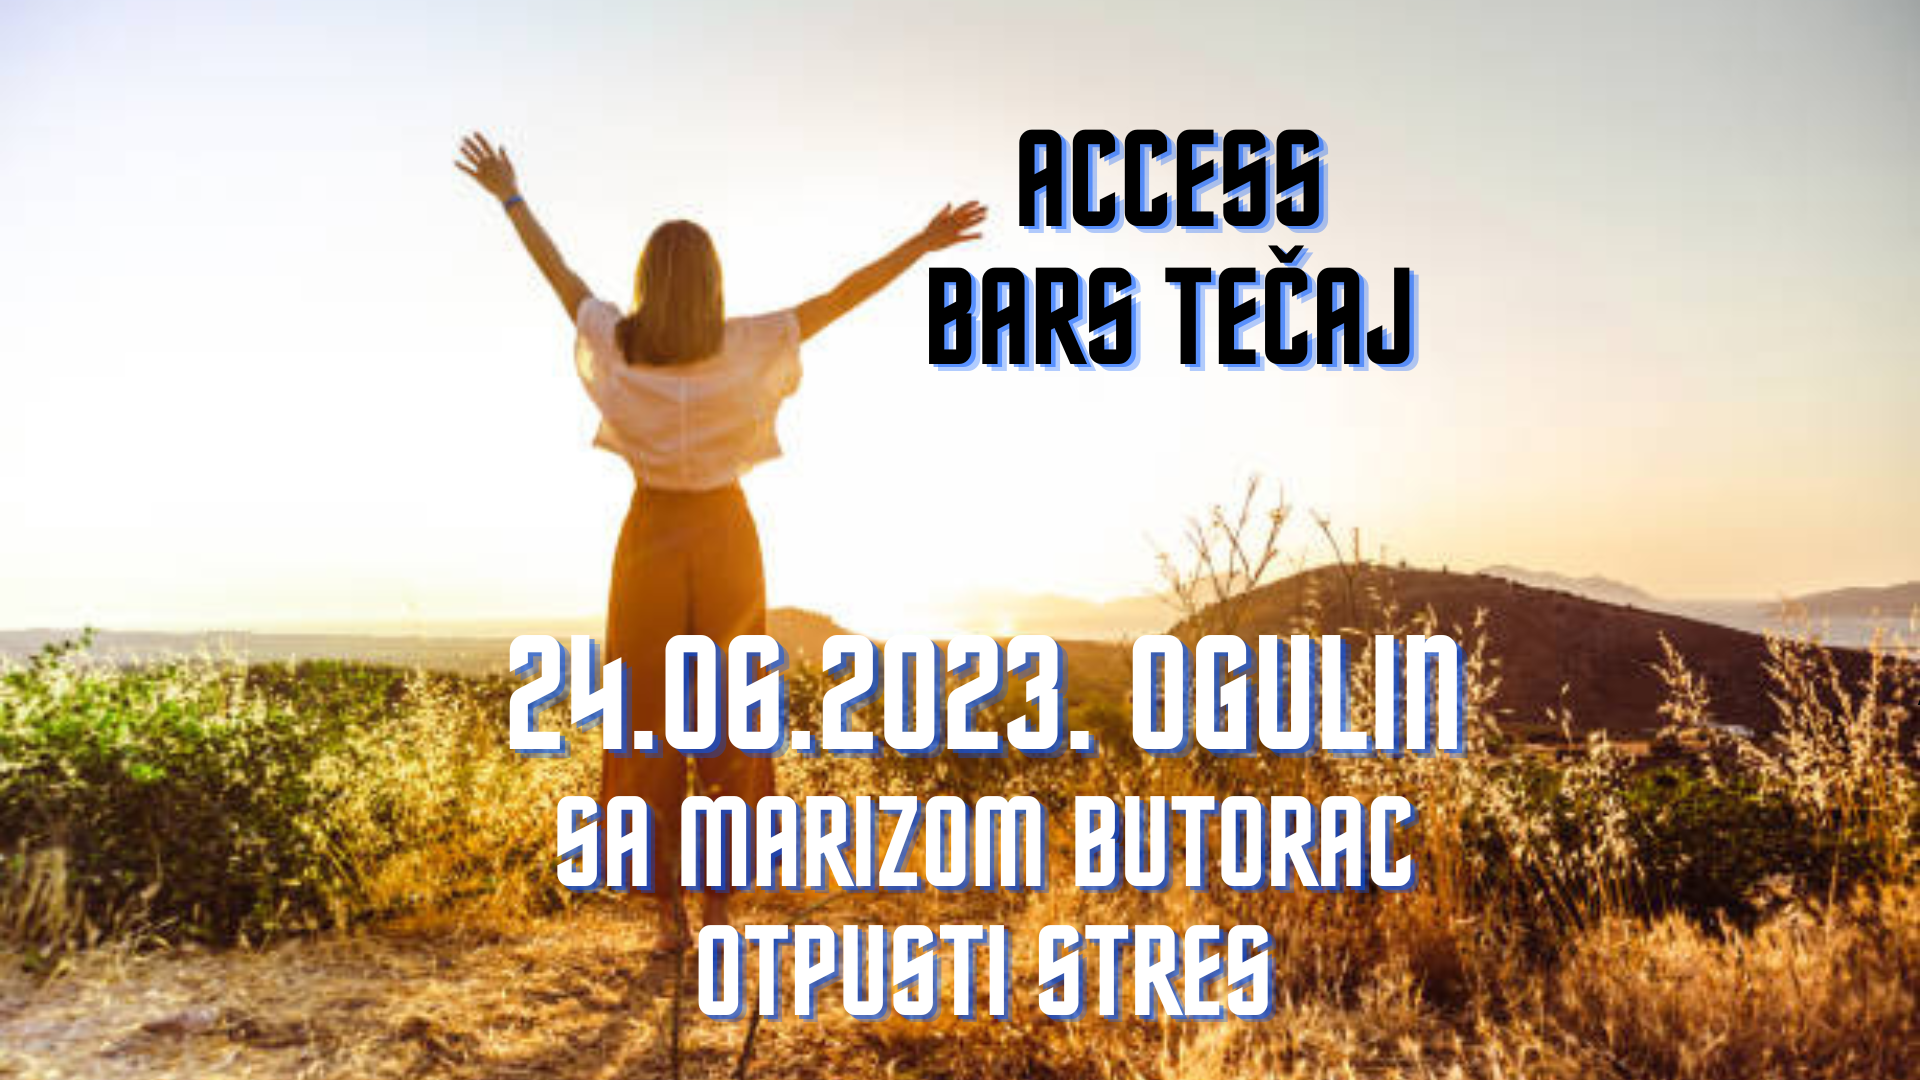 Otpusti stres OGULIN 24.06., Access Bars edukacija